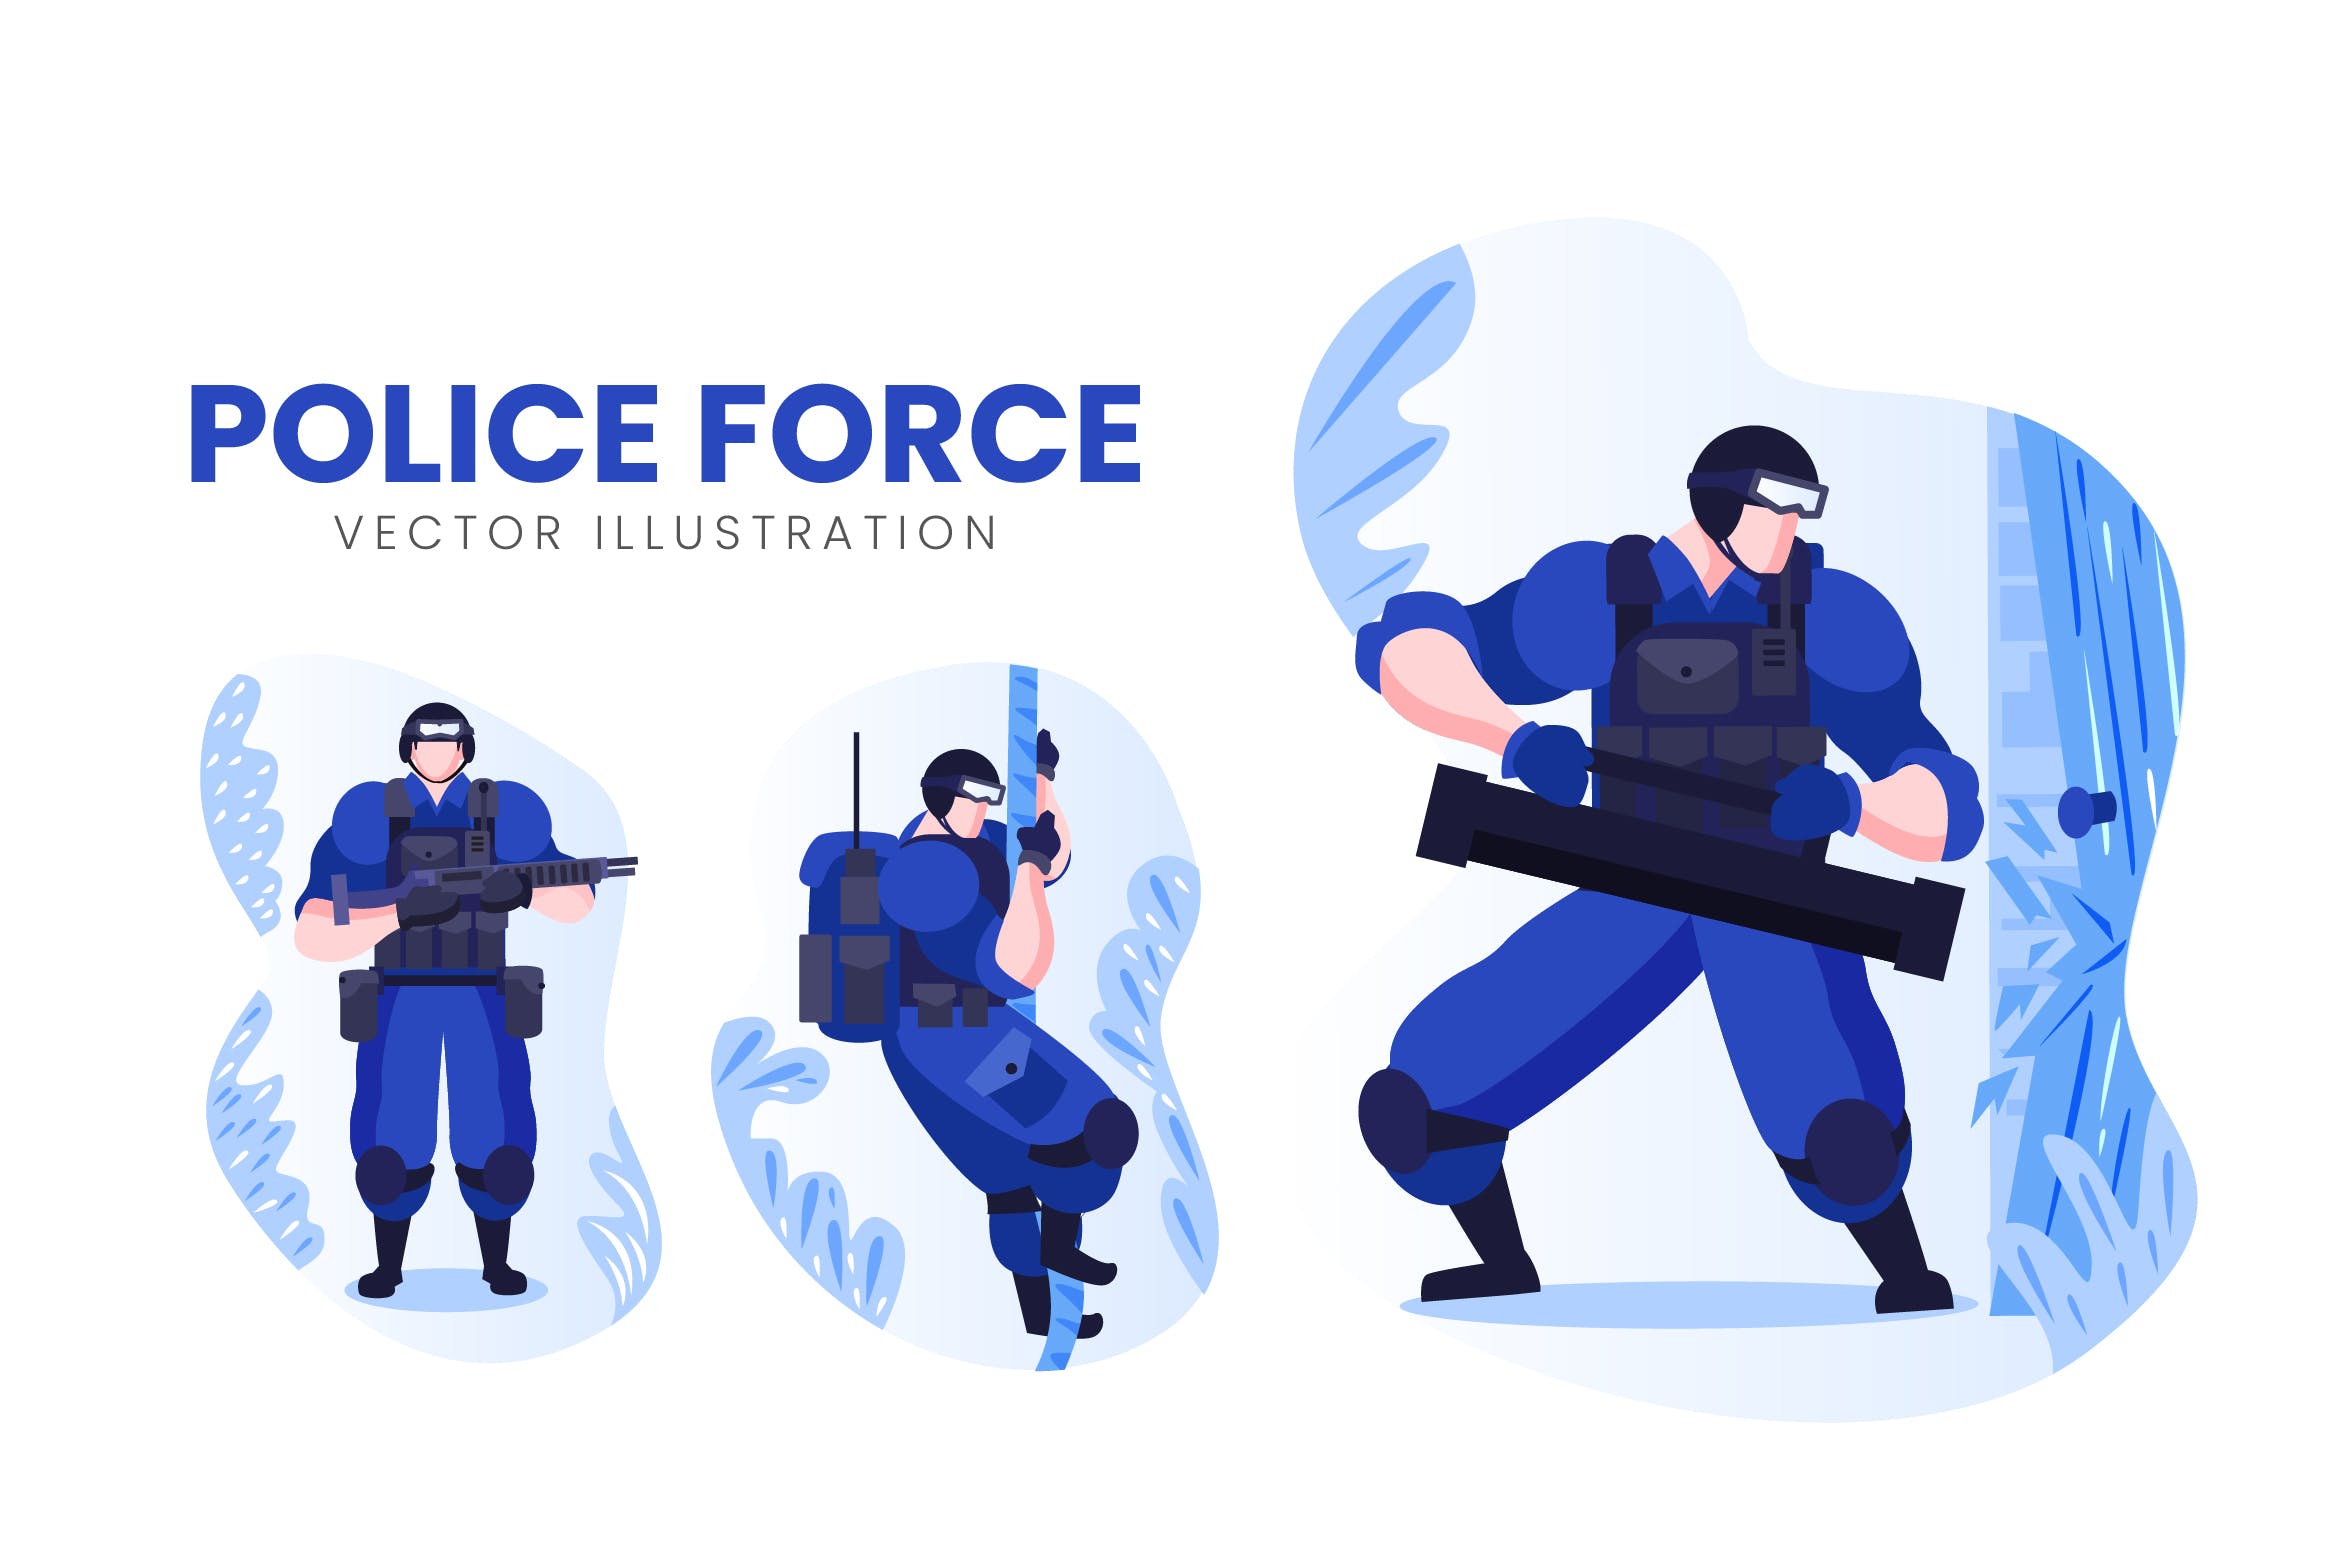 警察人物形象16图库精选手绘插画矢量素材 Police Force Vector Character Set插图